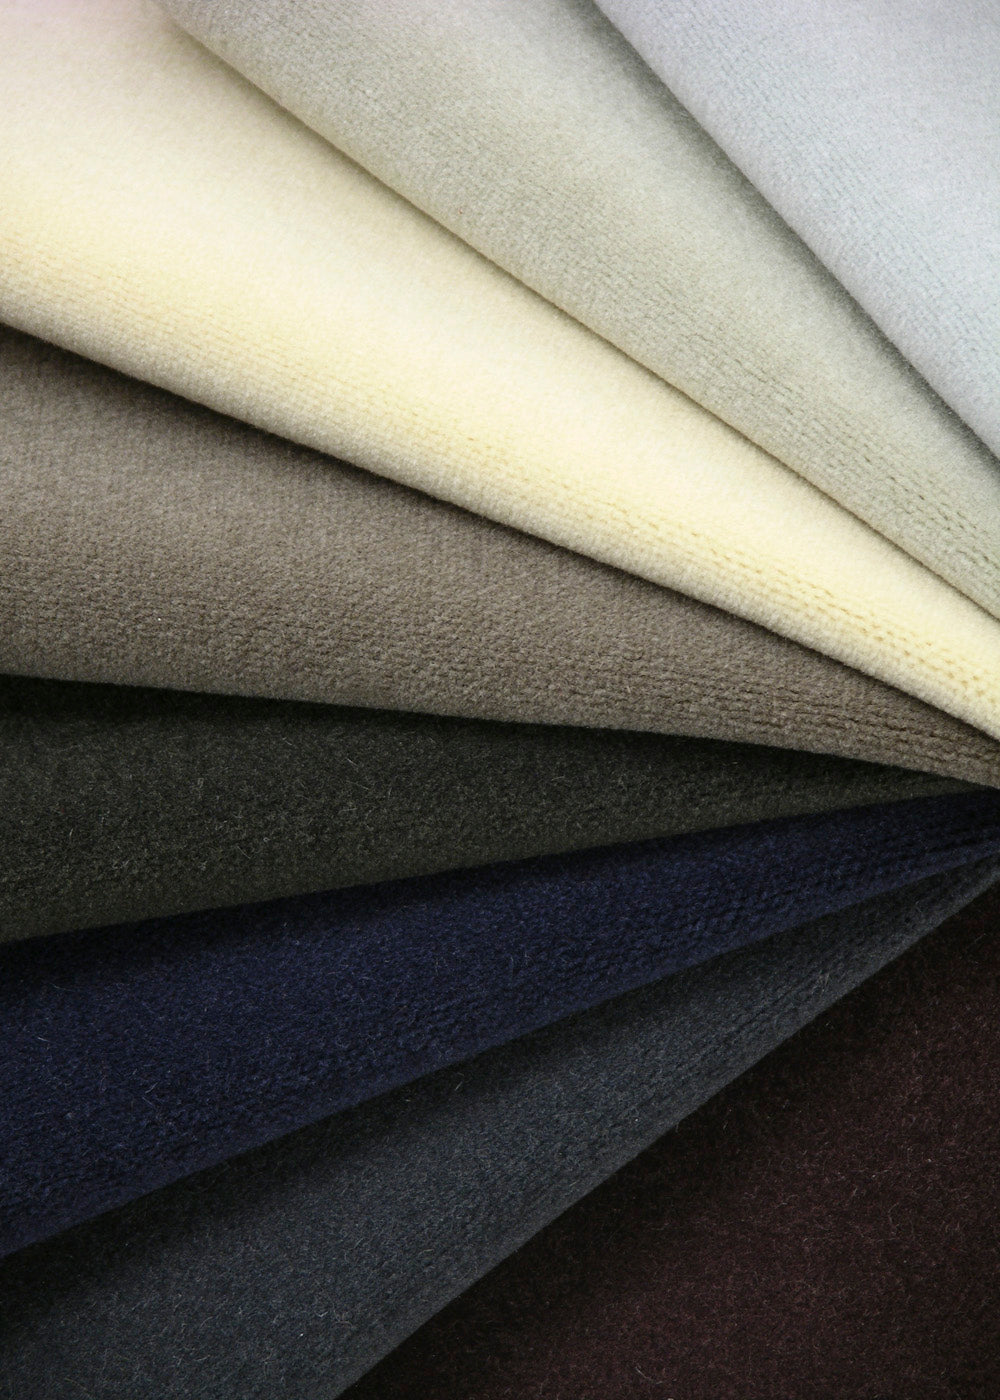 a fan of cashmere velvet fabrics for upholstery